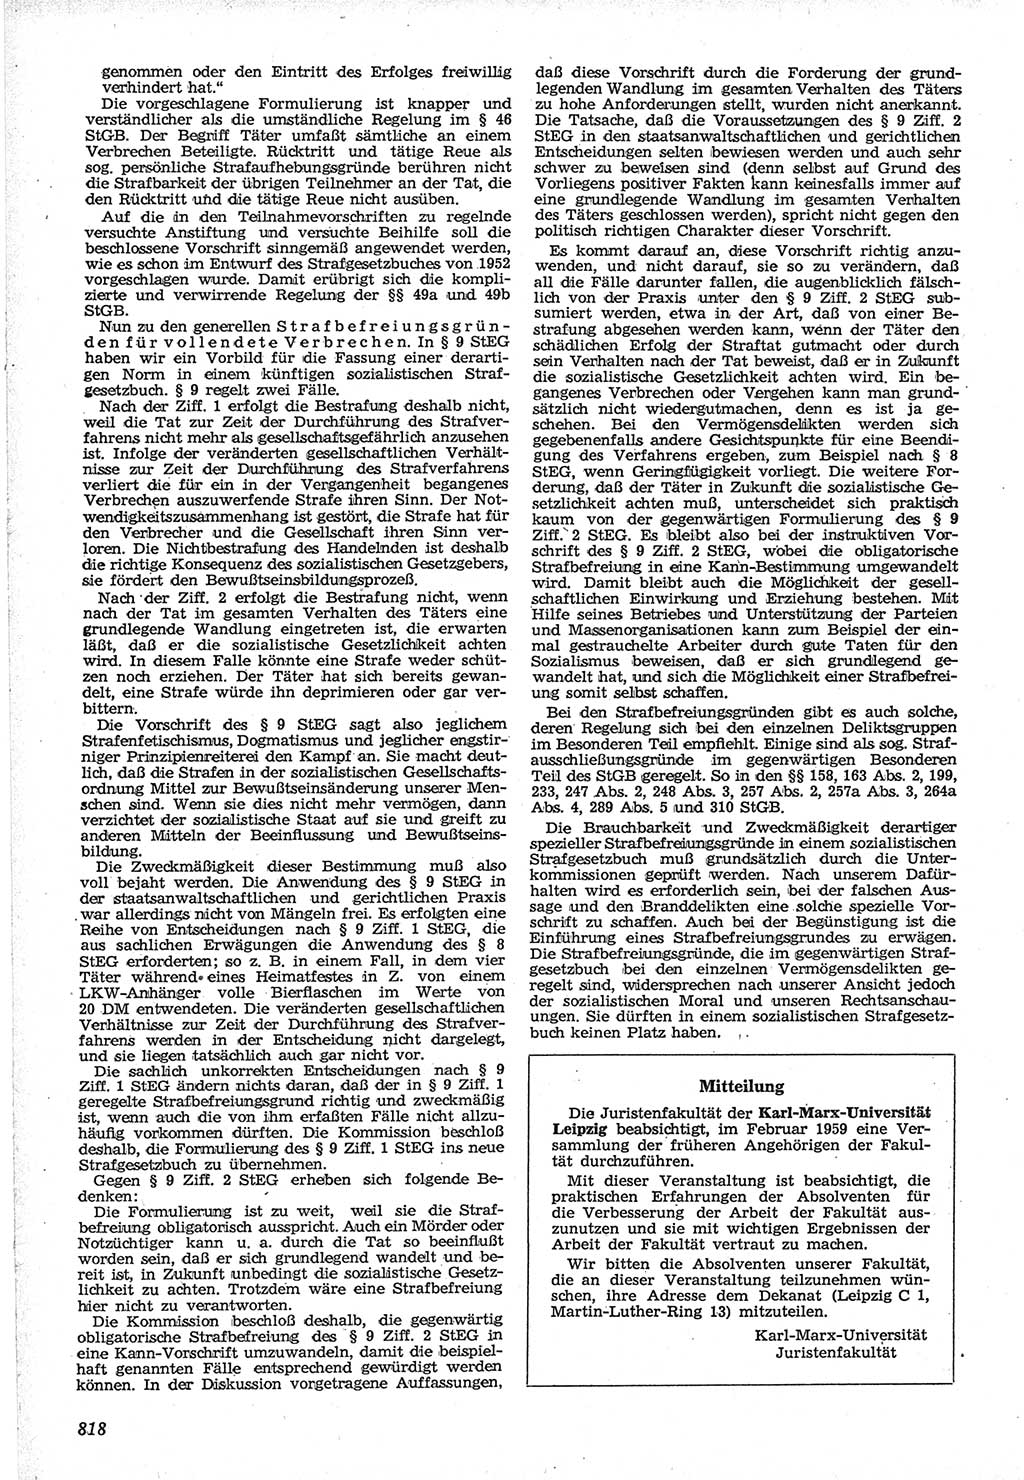 Neue Justiz (NJ), Zeitschrift für Recht und Rechtswissenschaft [Deutsche Demokratische Republik (DDR)], 12. Jahrgang 1958, Seite 818 (NJ DDR 1958, S. 818)